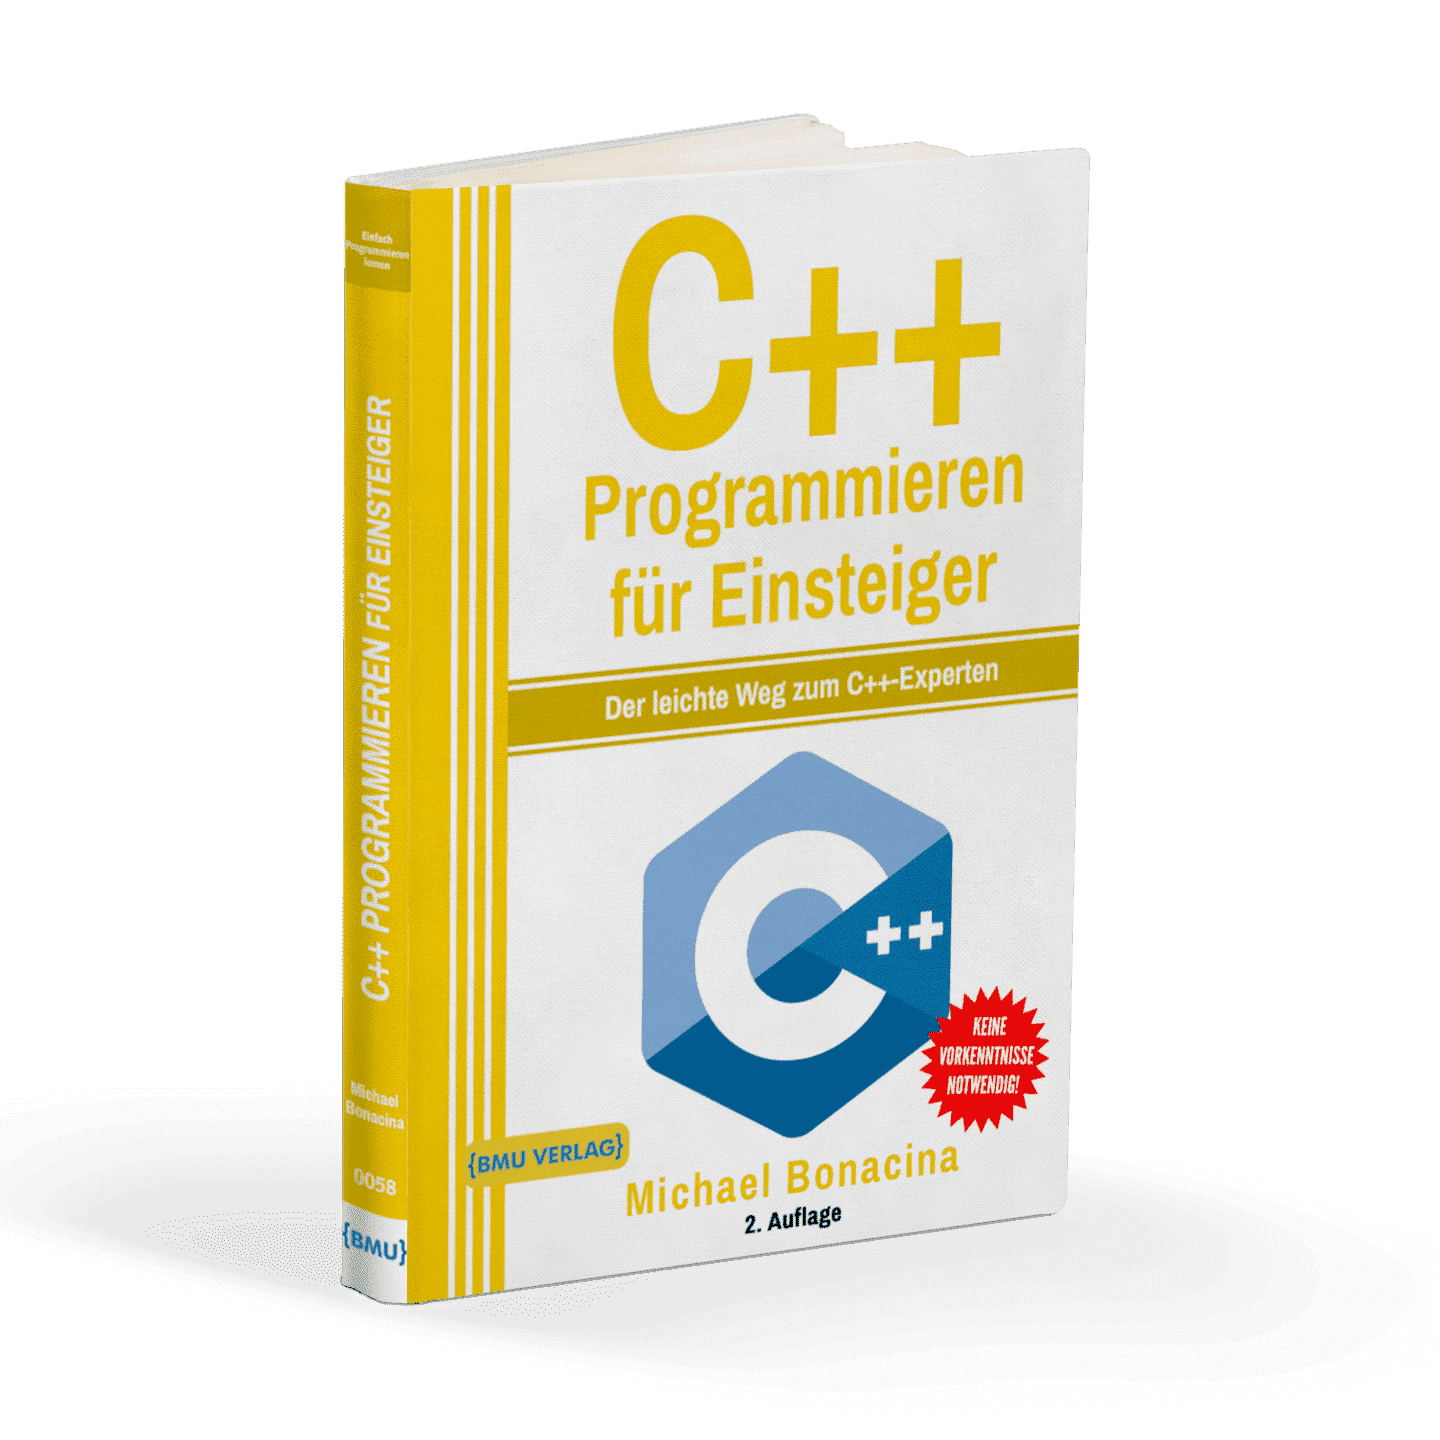 C++ Programmieren für Einsteiger: Der leichte Weg zum C++ Experten - AZ-Delivery